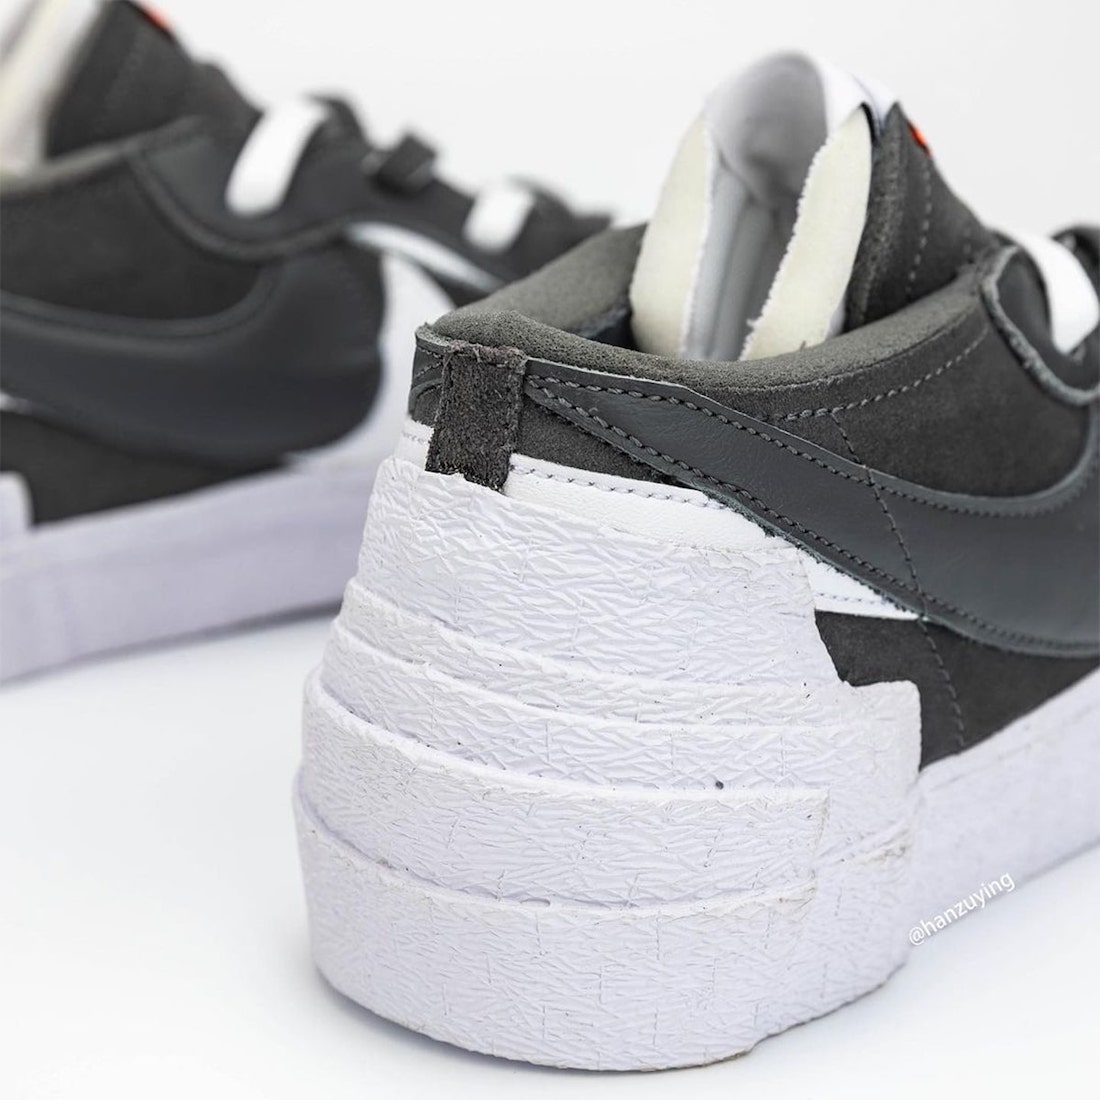 Sacai Nike Blazer Low Dark Grey DD1877-002 Release Date